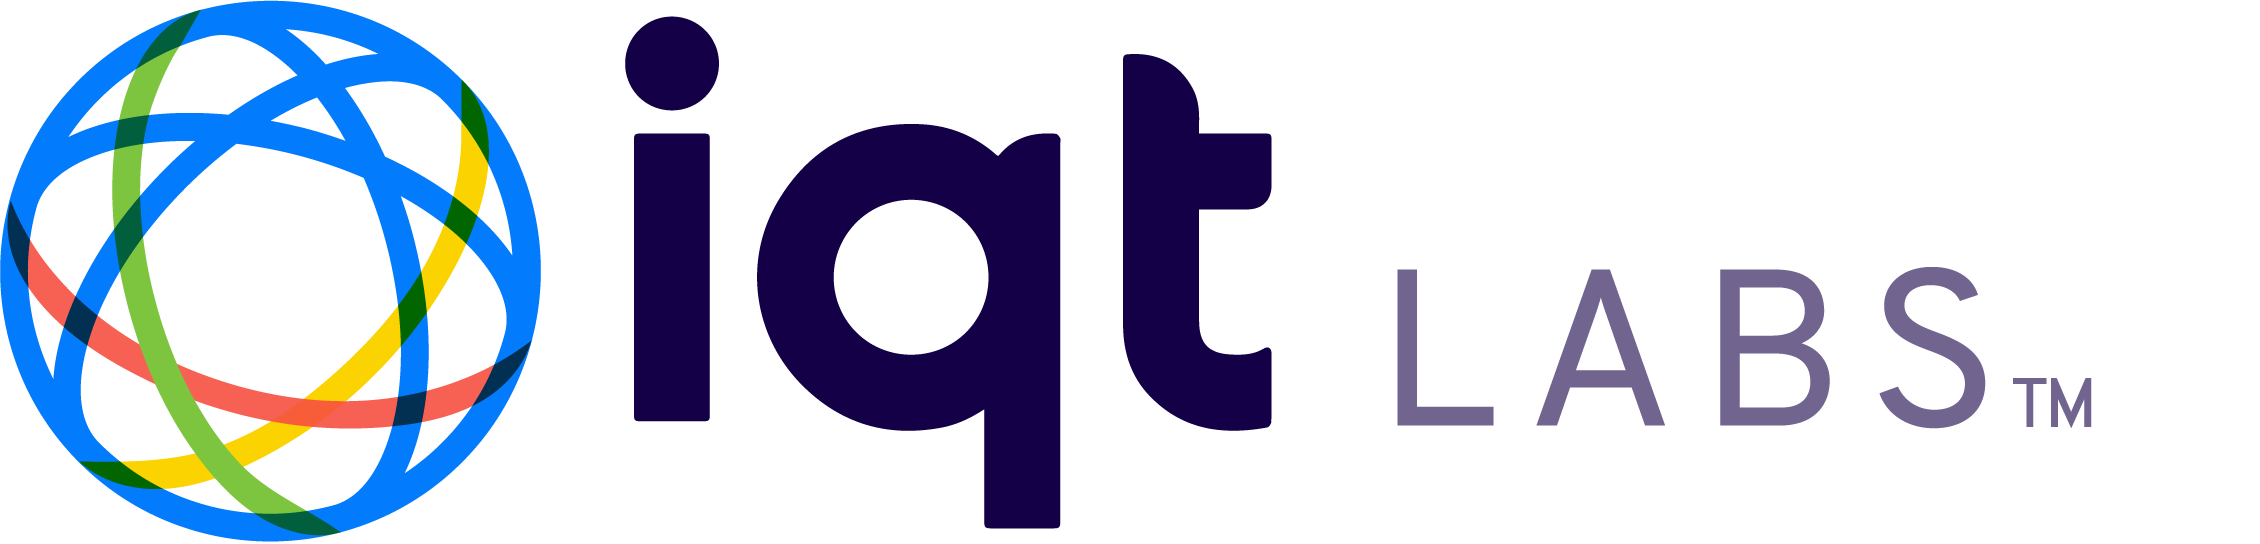 IQT partner logo